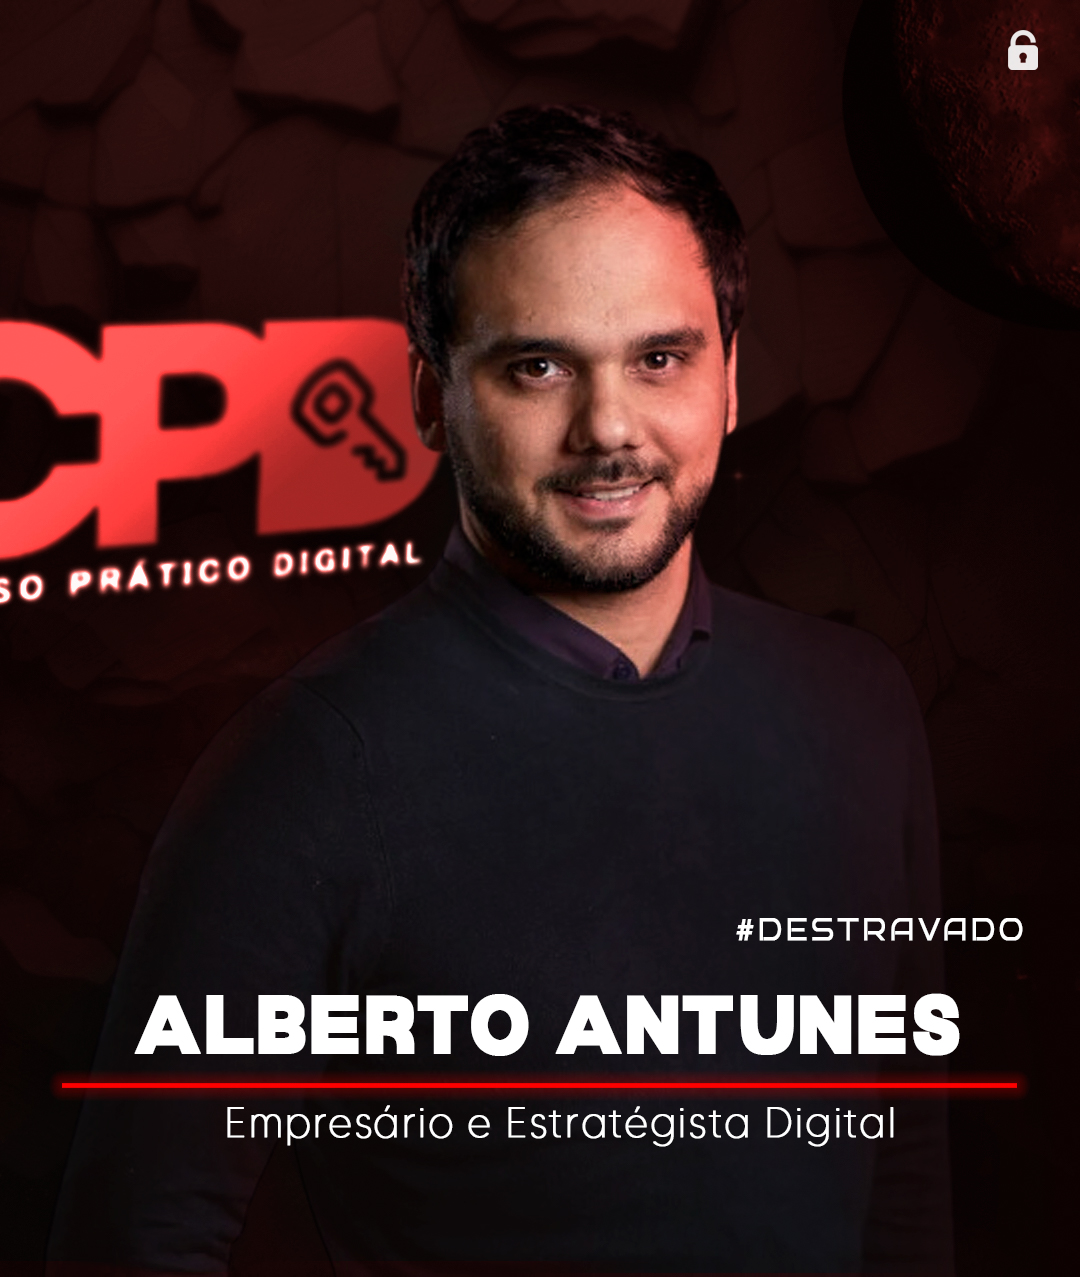 ALBERTO ANTUNES IMPACTADO